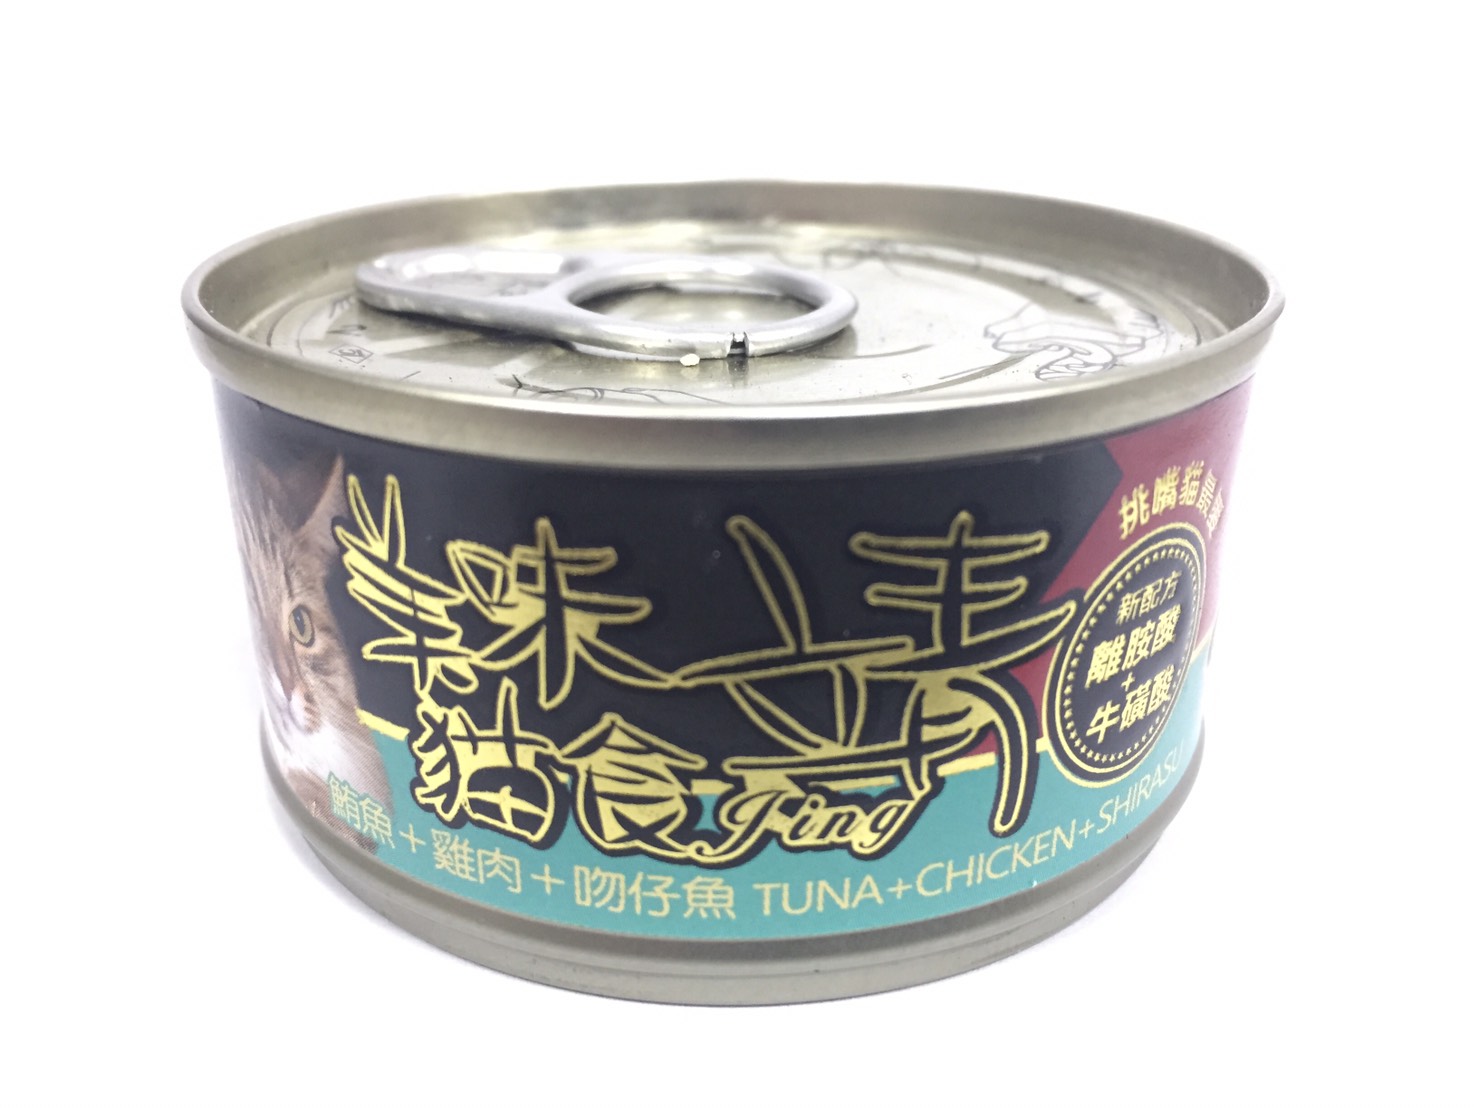 靖特級貓罐-鮪魚+雞肉+吻仔魚
Jing cat can-tuna+chicken+shirasu